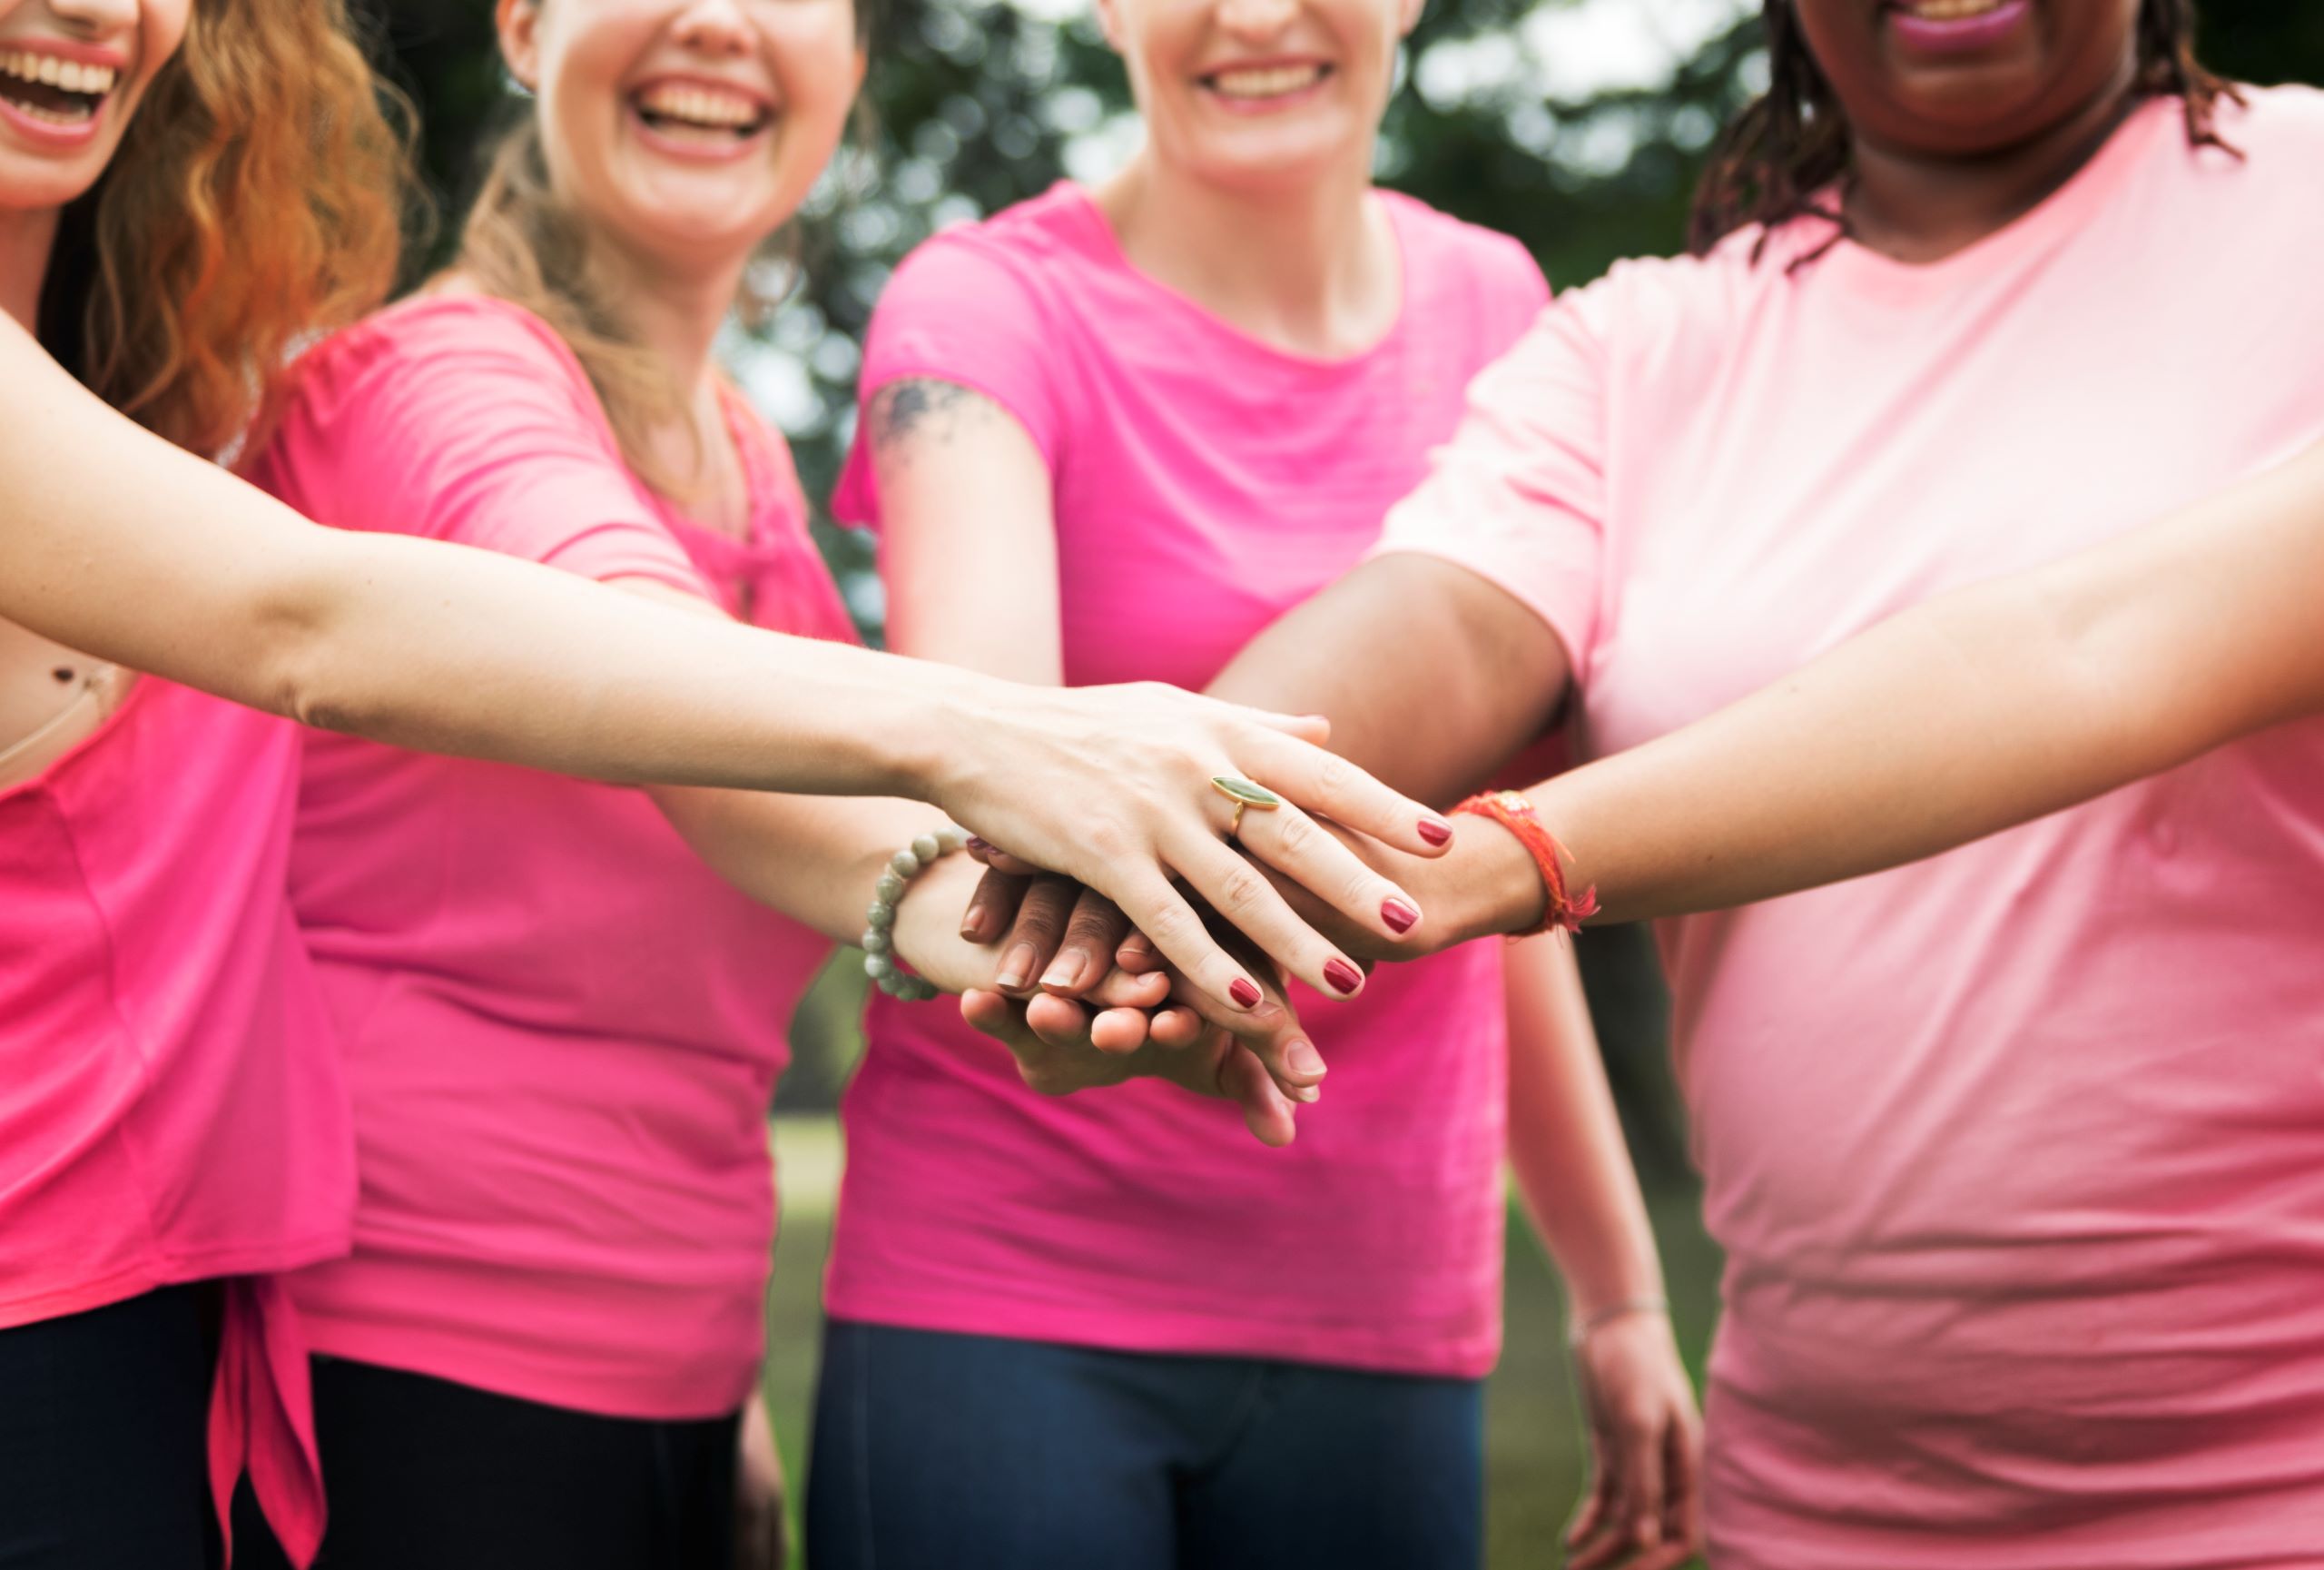 O Outubro Rosa é um movimento global que visa conscientizar sobre o câncer de mama e arrecadar fundos para pesquisa e apoio às pacientes. Este é o momento perfeito para sua empresa demonstrar seu comprometimento com a responsabilidade social corporativa e se envolver ativamente em uma causa importante.